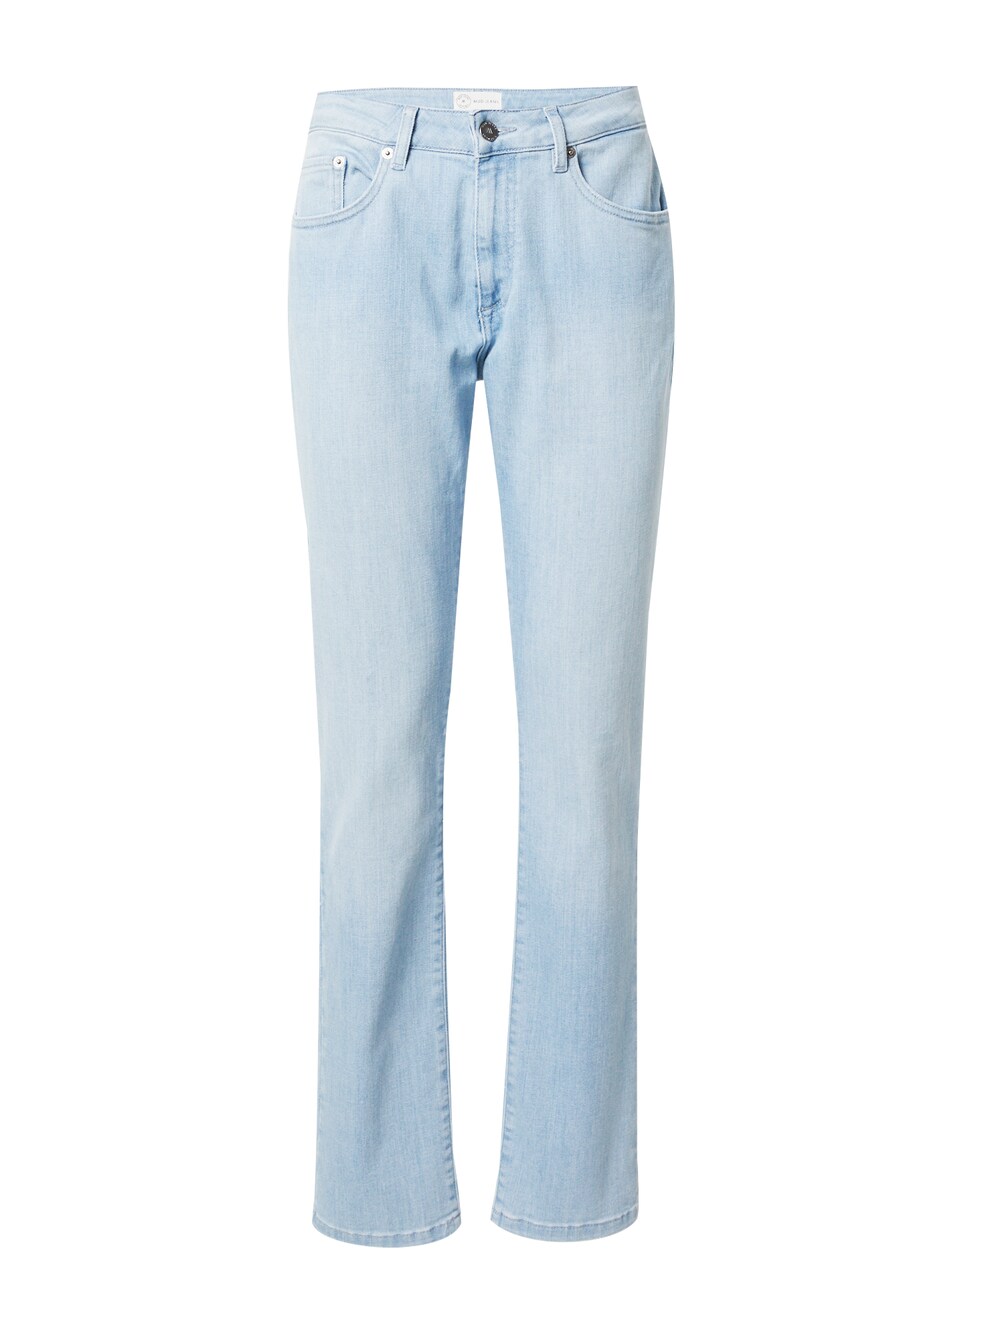 Обычные джинсы Mud Jeans Faye, светло-синий